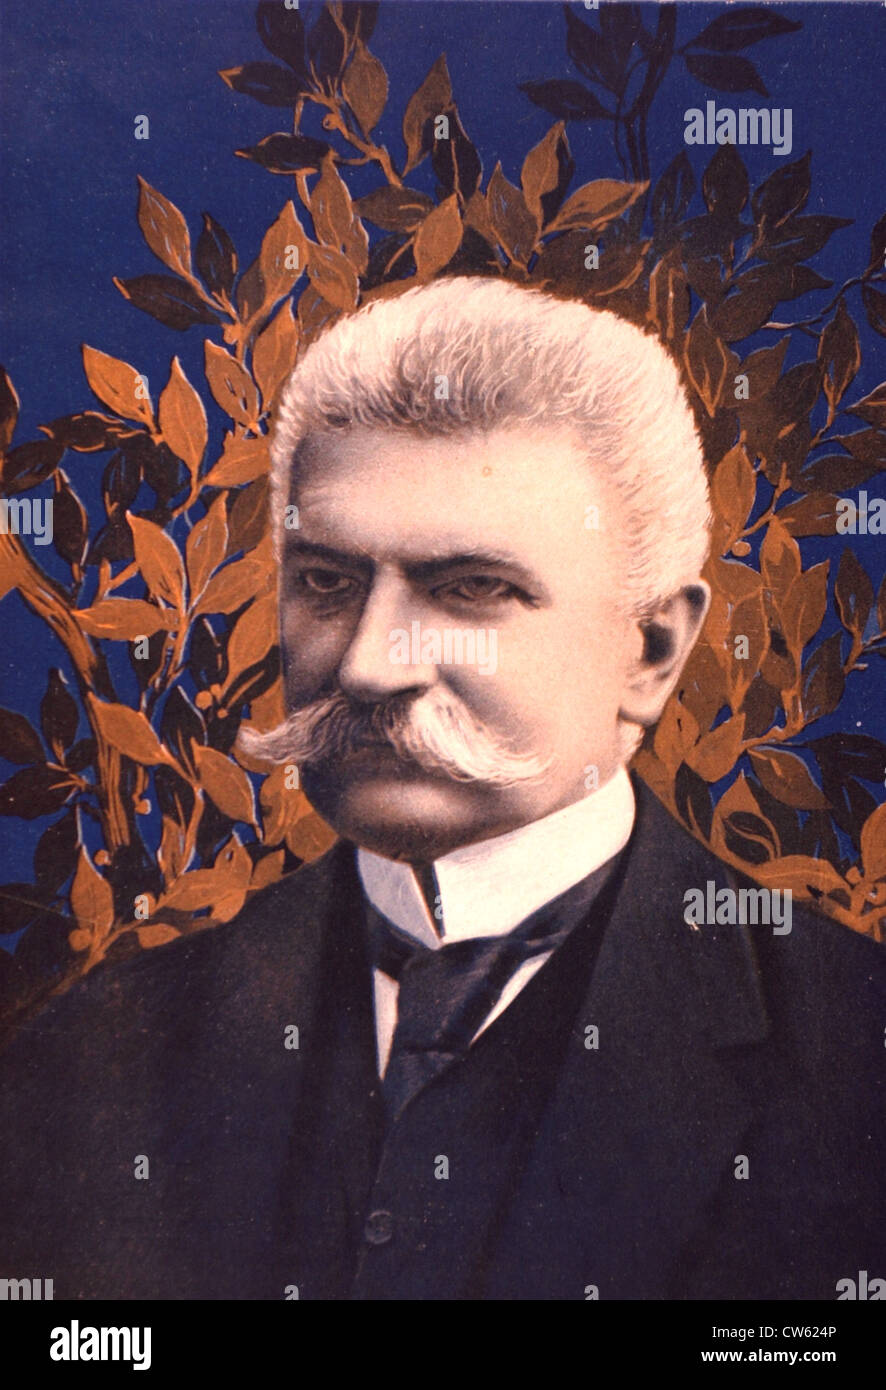 Ritratto del sig. Sonnino, in 'Le pays de France', 2-17-1916 Foto Stock